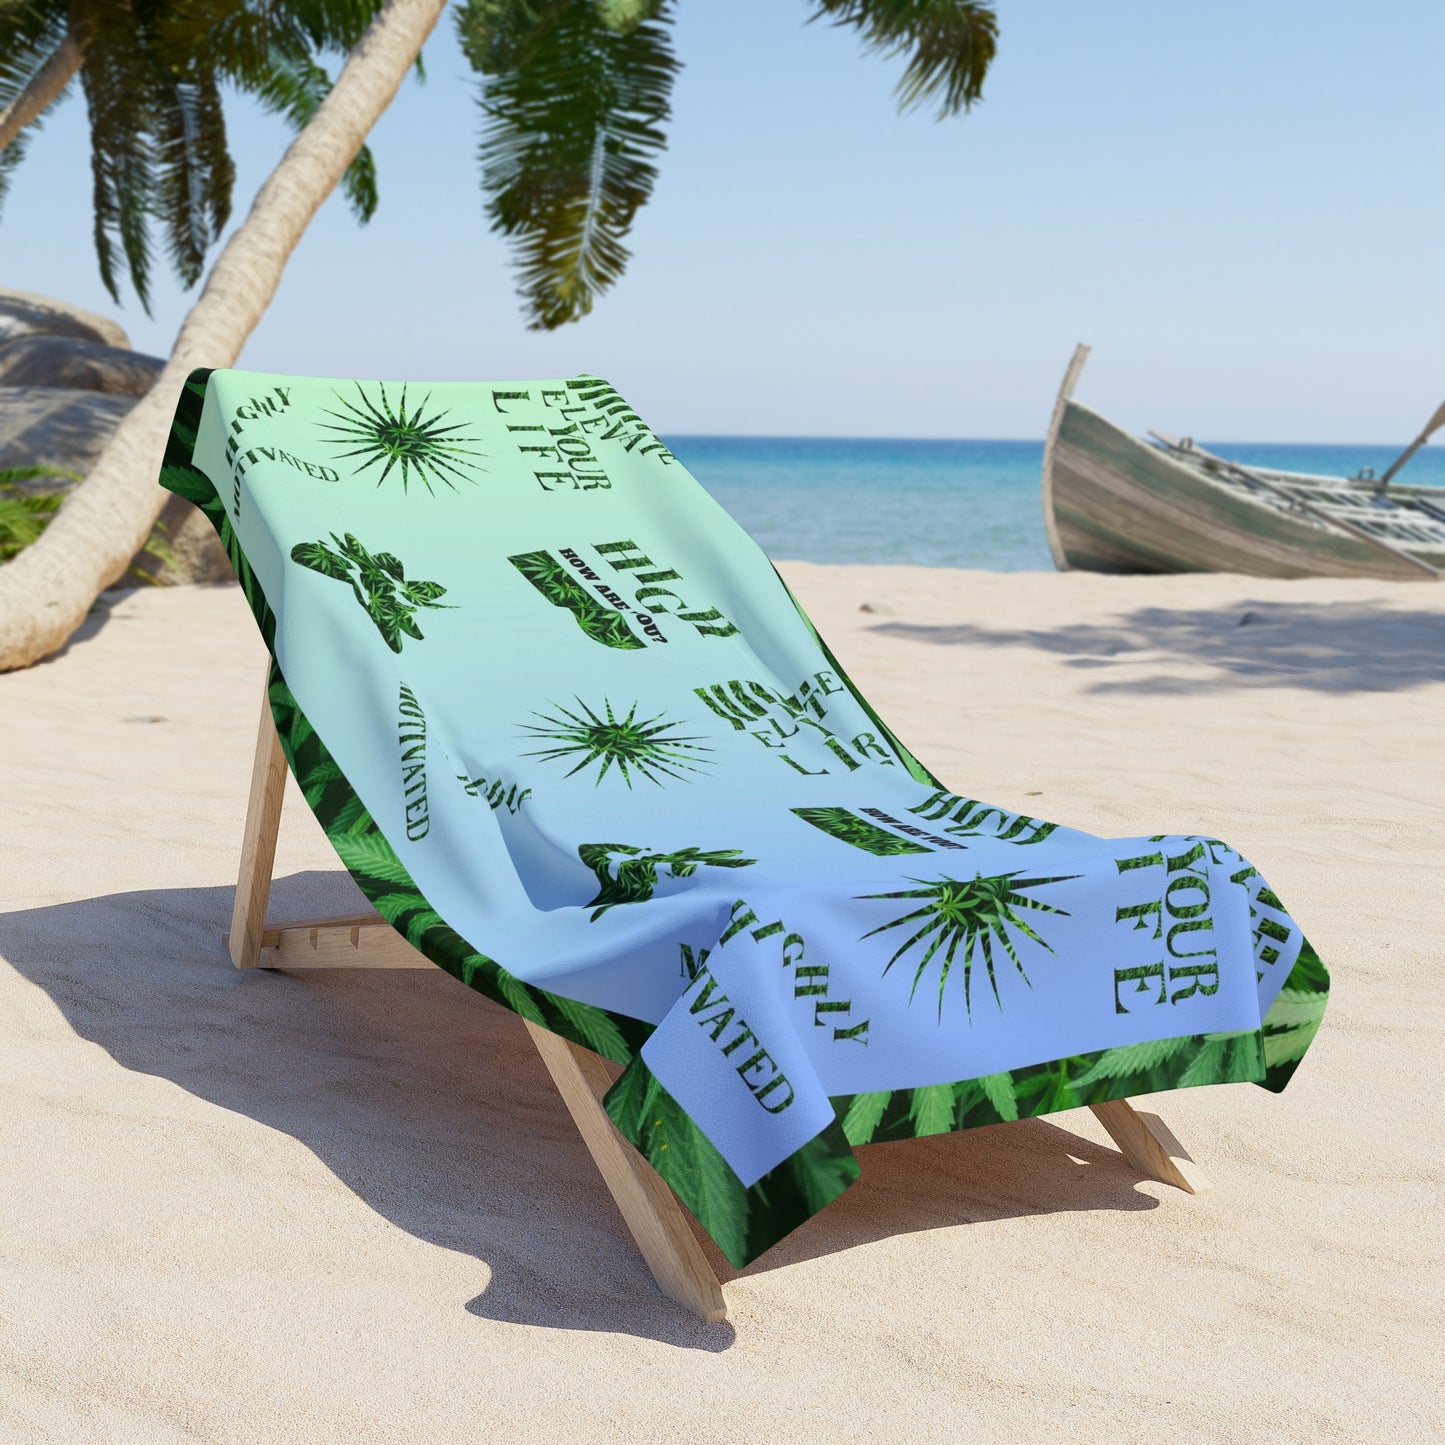 High How Are You Cannabis Beach Towel